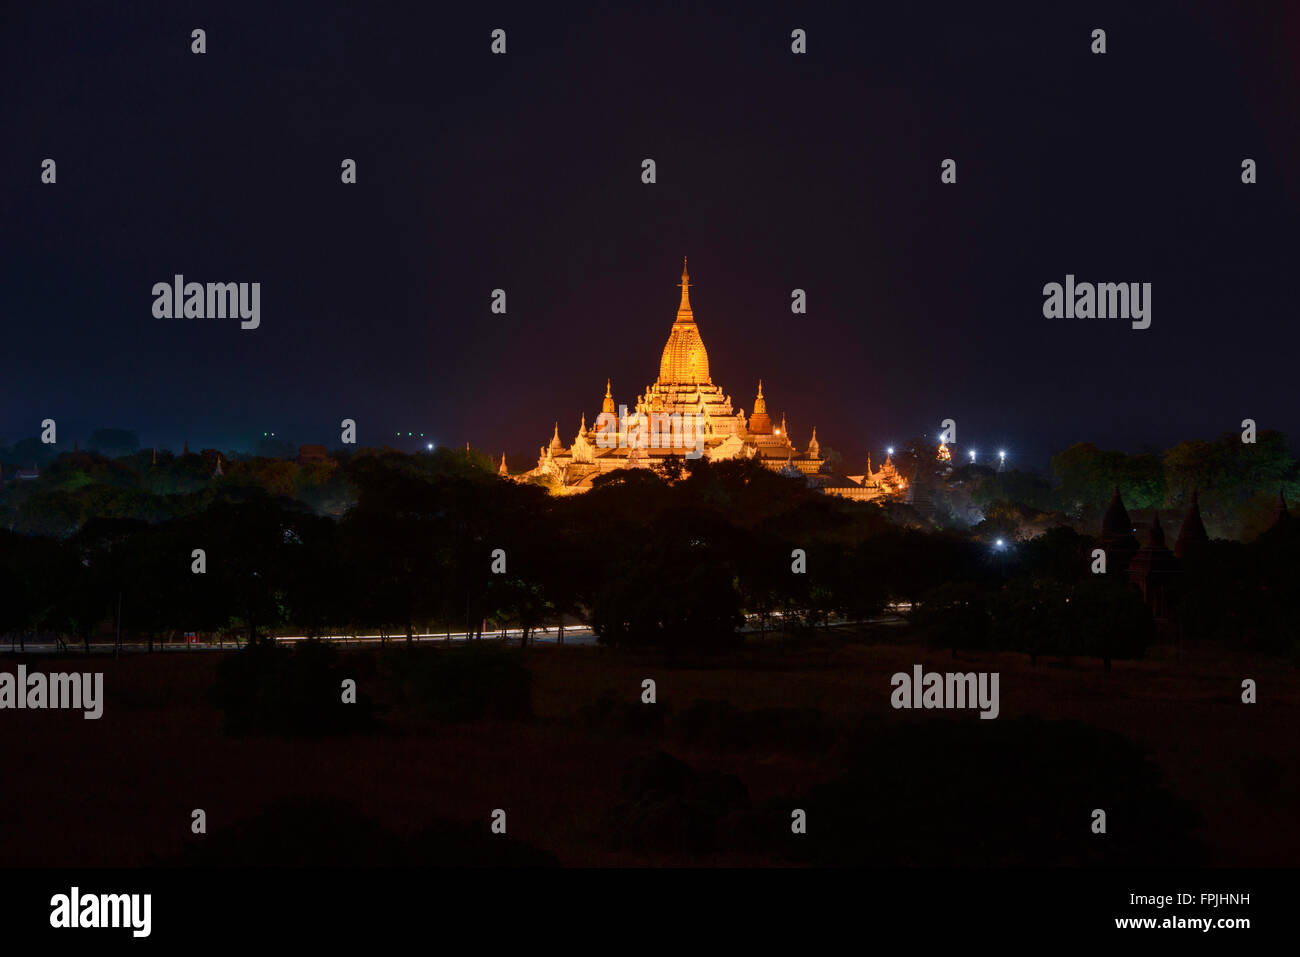 Ananda Pahtowas temple at night, Bagan, Myanmar Stock Photo